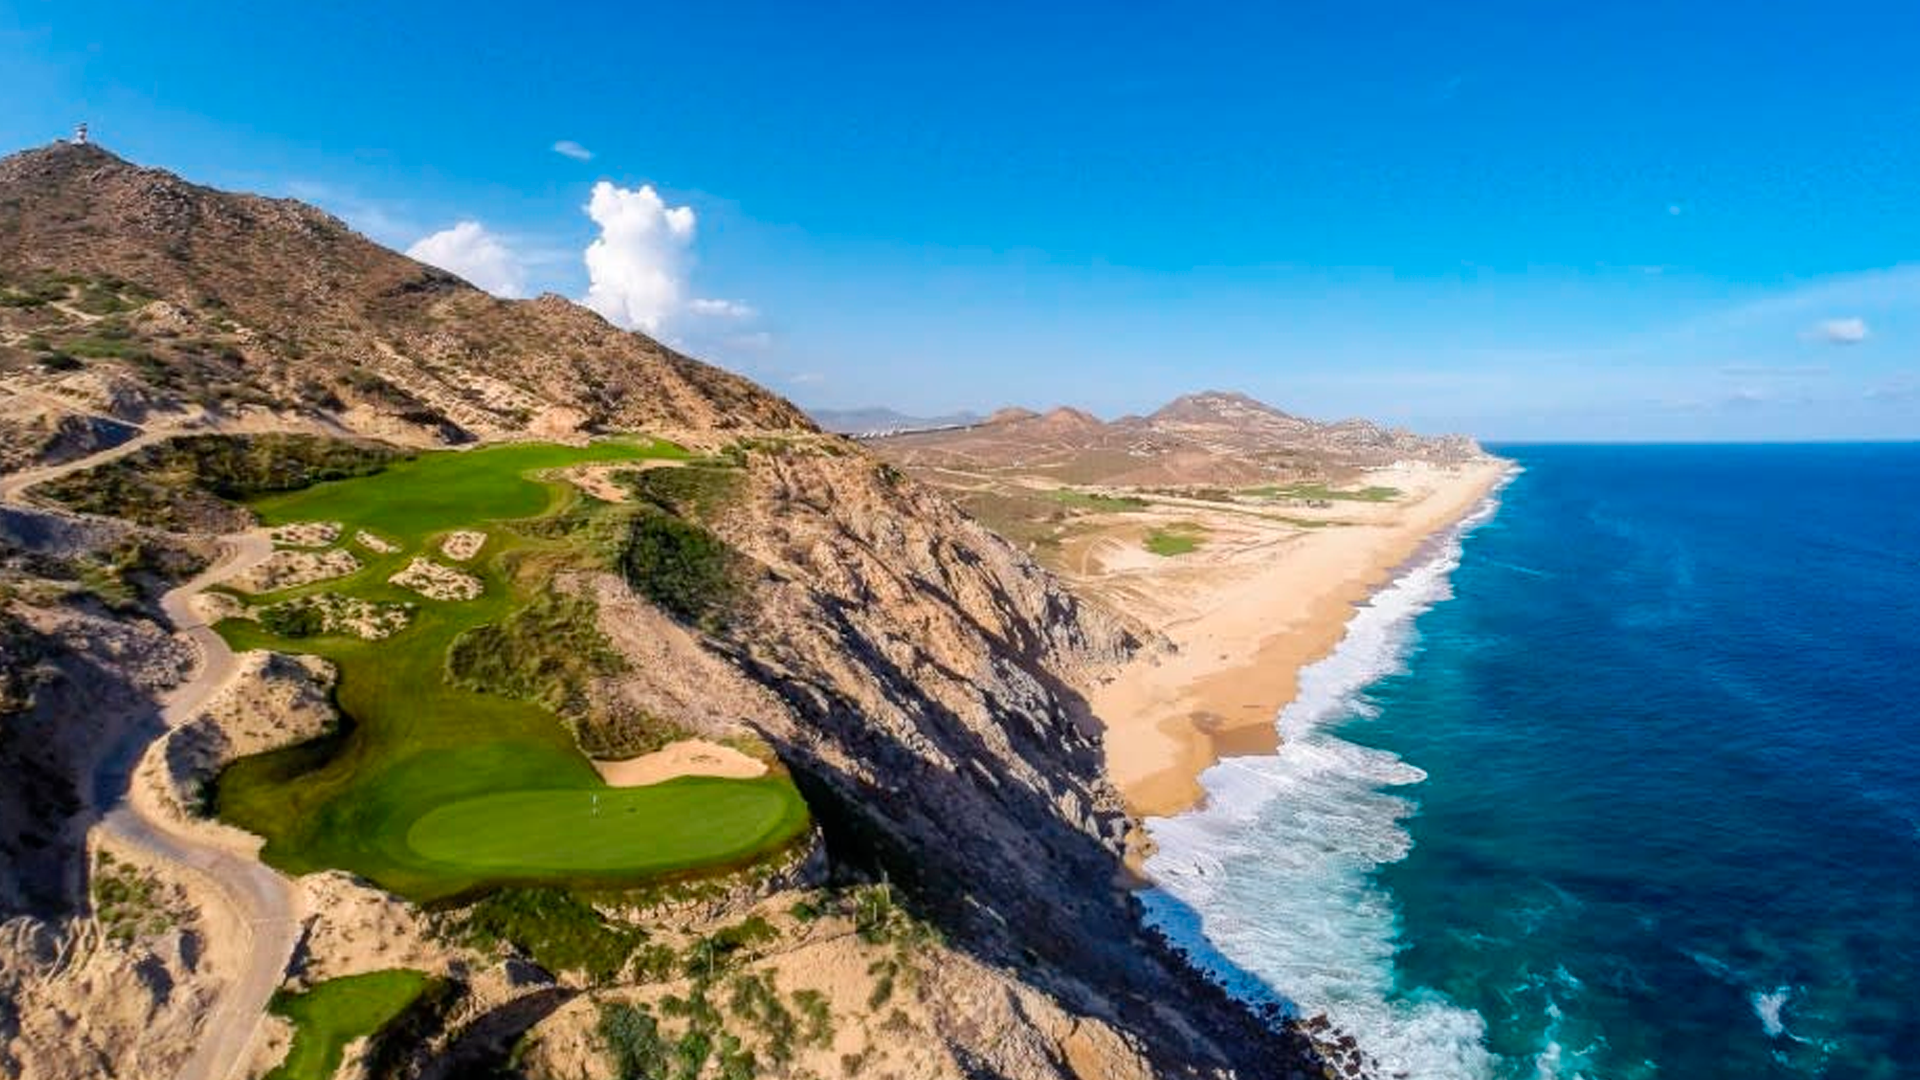 La cancha de golf que mira al mar de Los Cabos, México